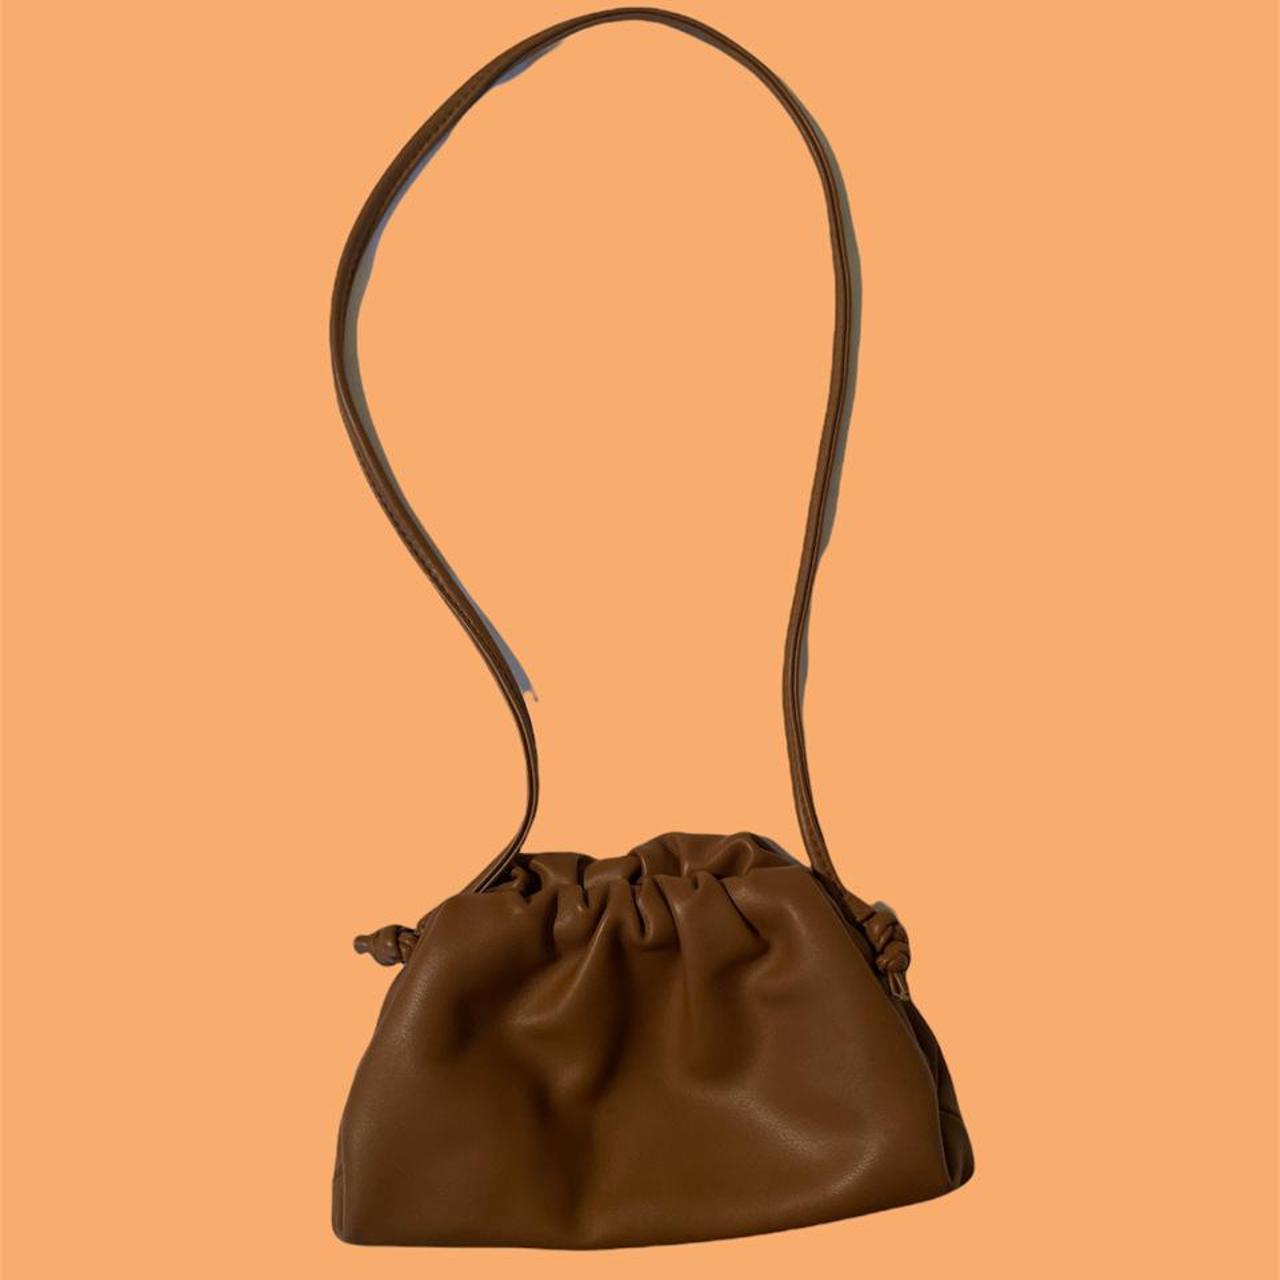 Bottega Veneta Women's Brown and Tan Bag